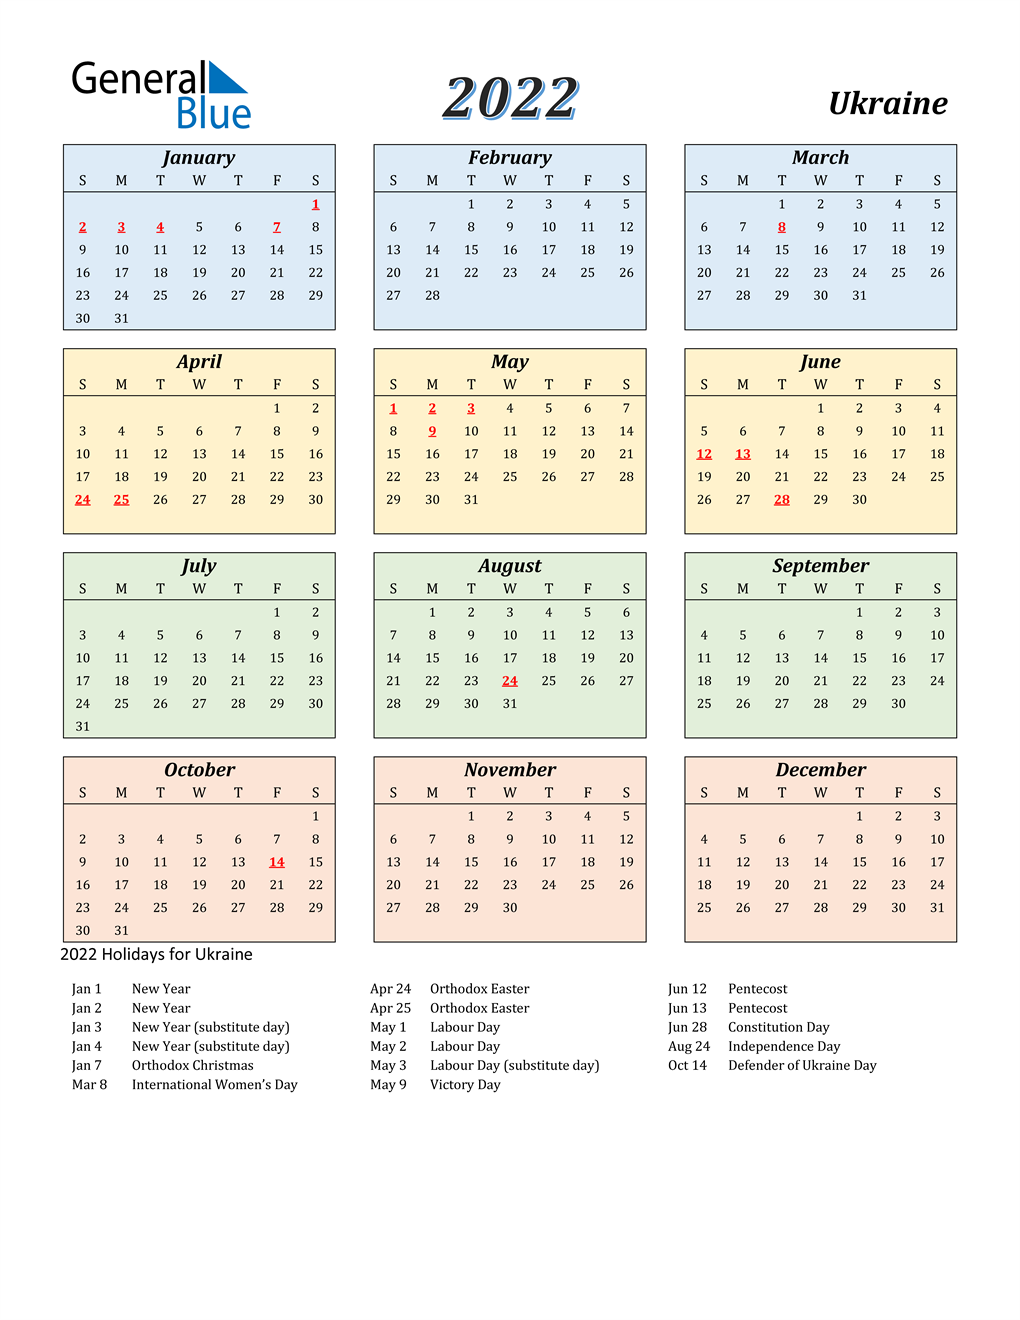 Ua Calendar 2022 2022 Ukraine Calendar With Holidays